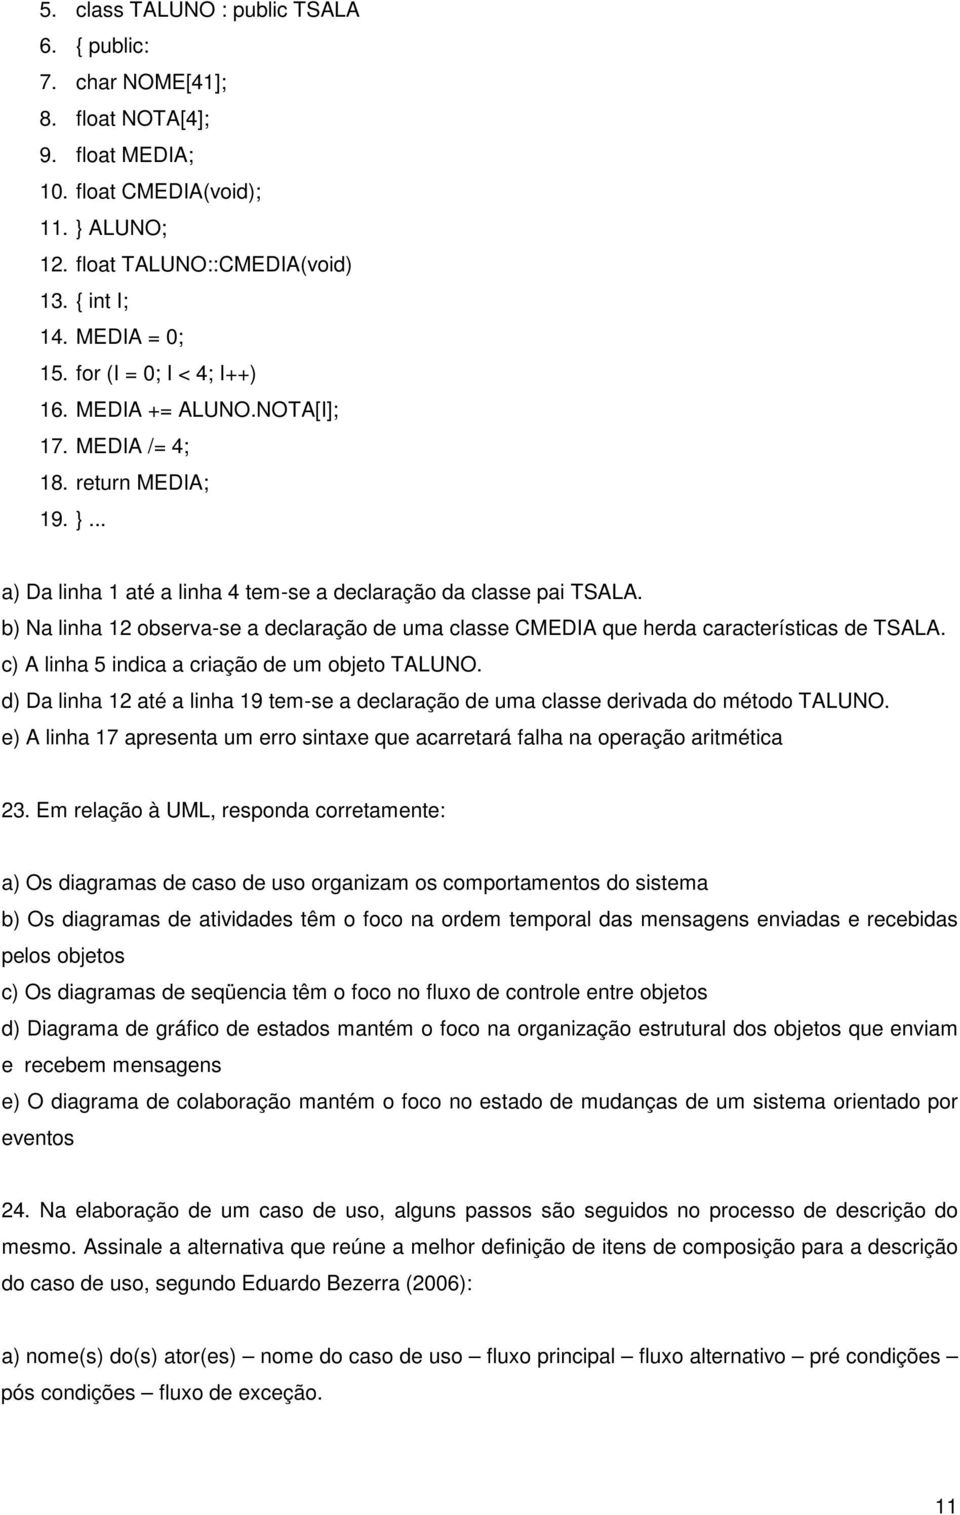 b) Na linha 12 observa-se a declaração de uma classe CMEDIA que herda características de TSALA. c) A linha 5 indica a criação de um objeto TALUNO.